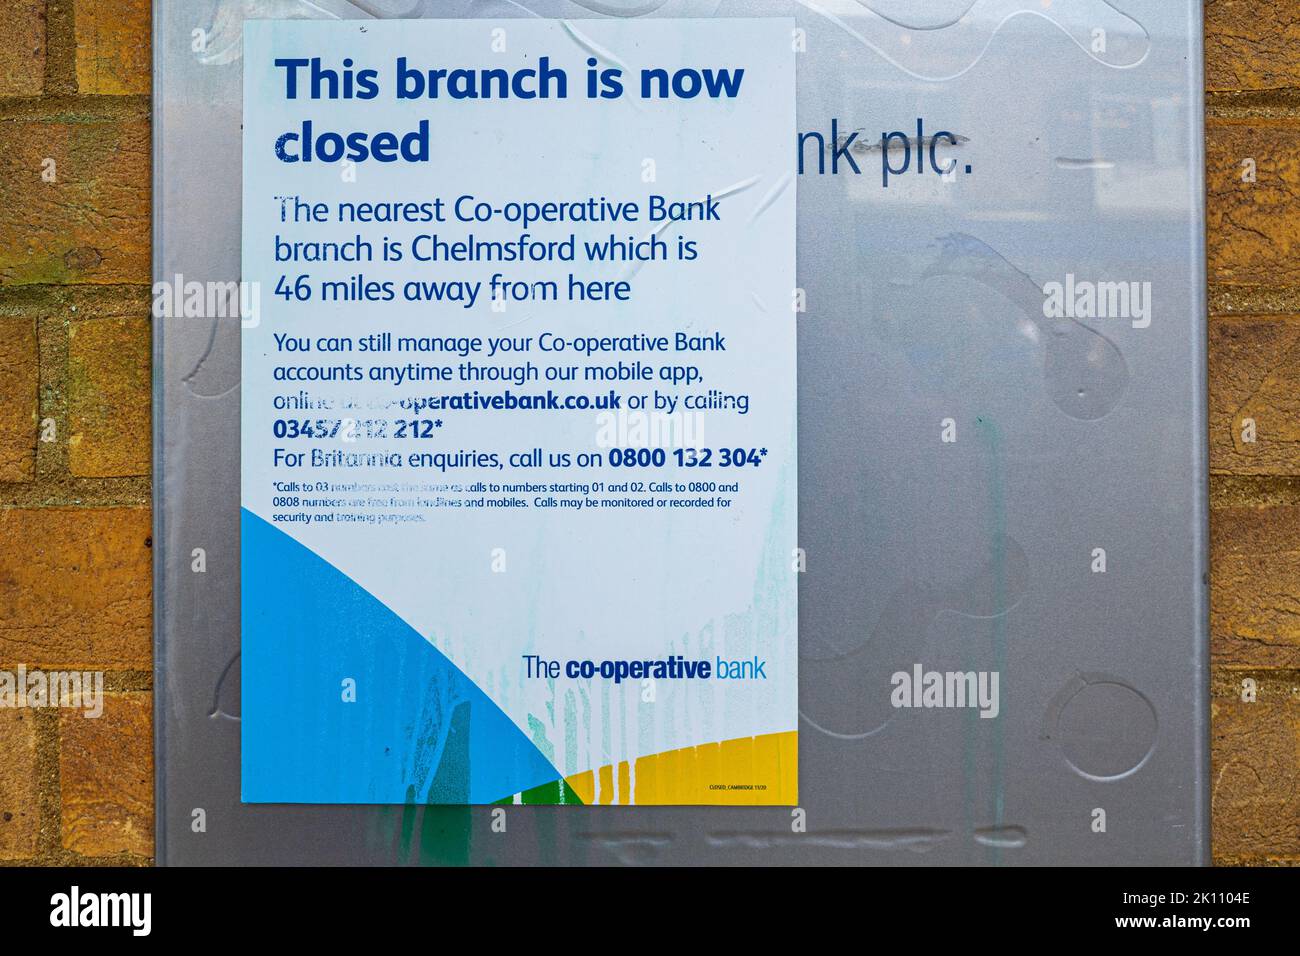 Cooperativa di chiusura di Bank Branch Bank Cambridge - avviso per informare i clienti che la filiale più vicina è a 46 miglia di distanza. Avviso di chiusura di una banca cooperativa. Foto Stock